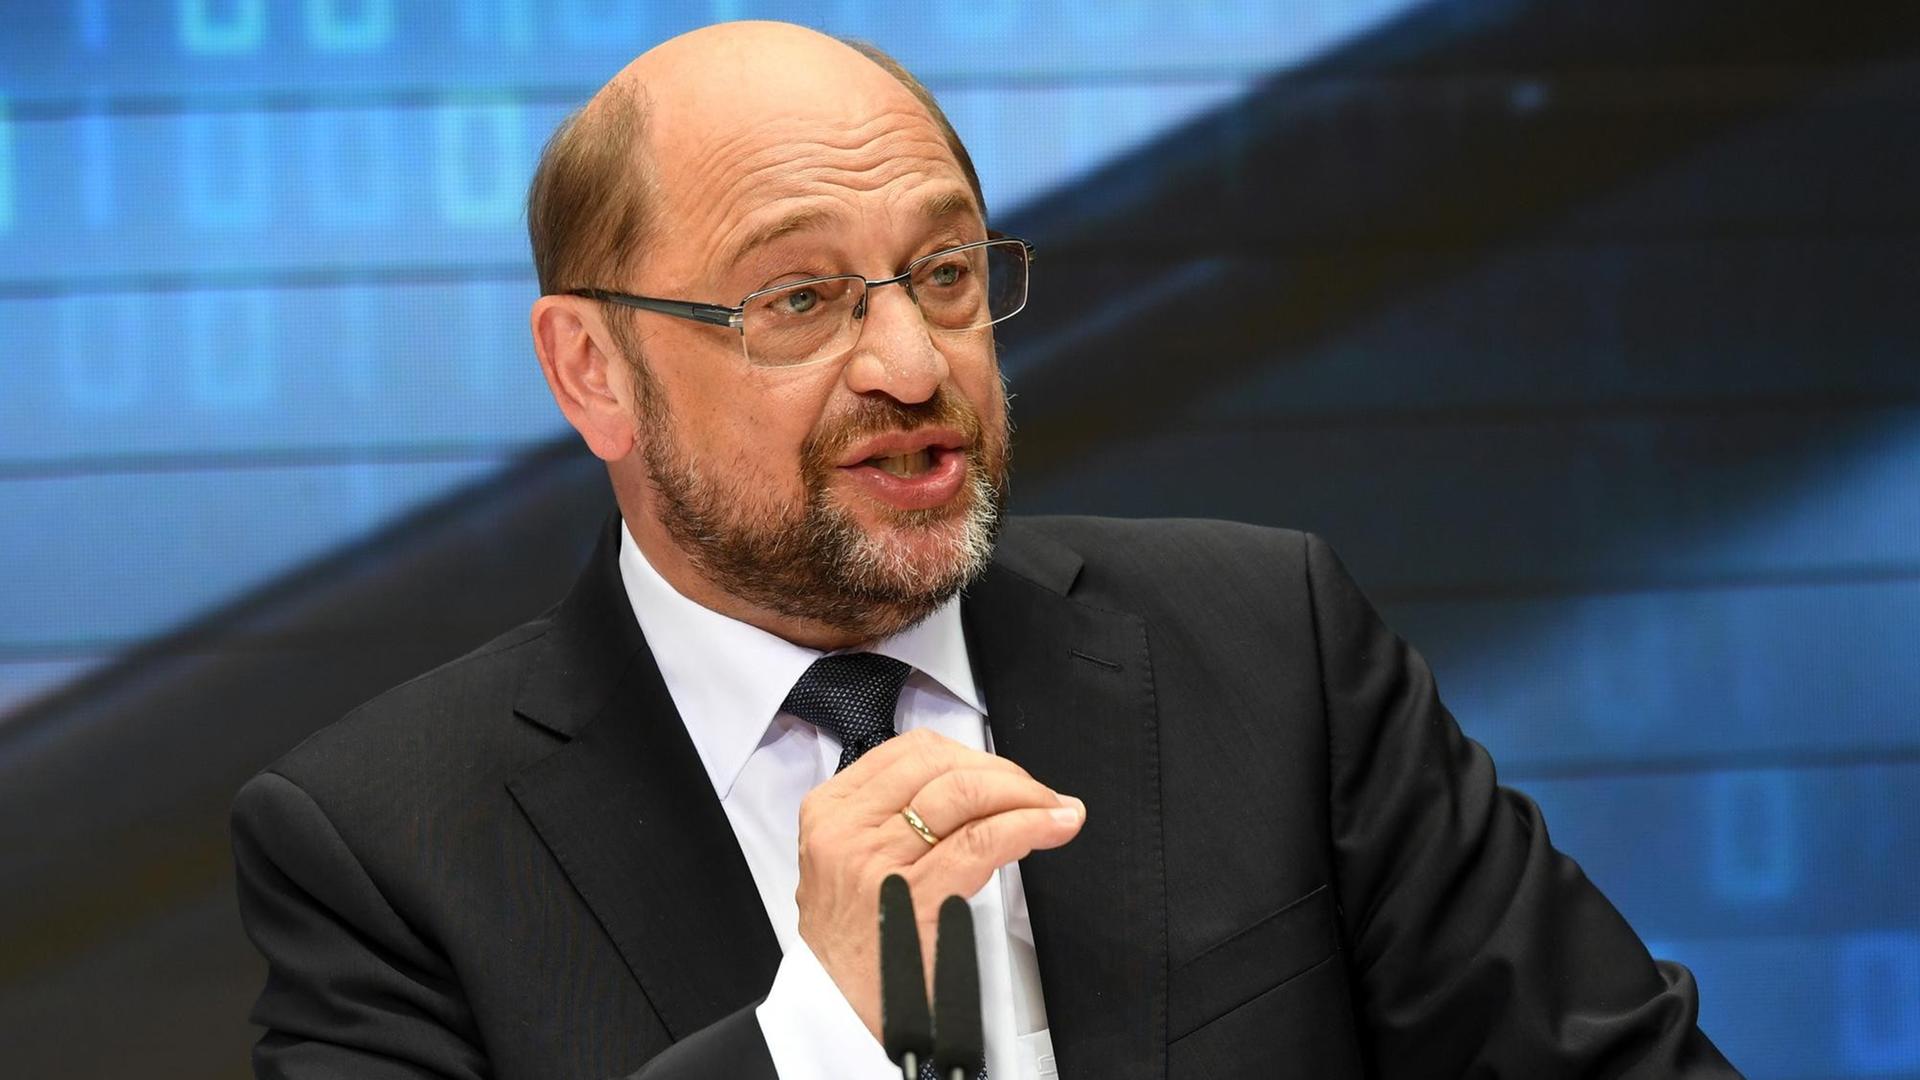 SPD-Kanzlerkandidat Martin Schulz spricht auf einer Bühne in ein Mikrofon.